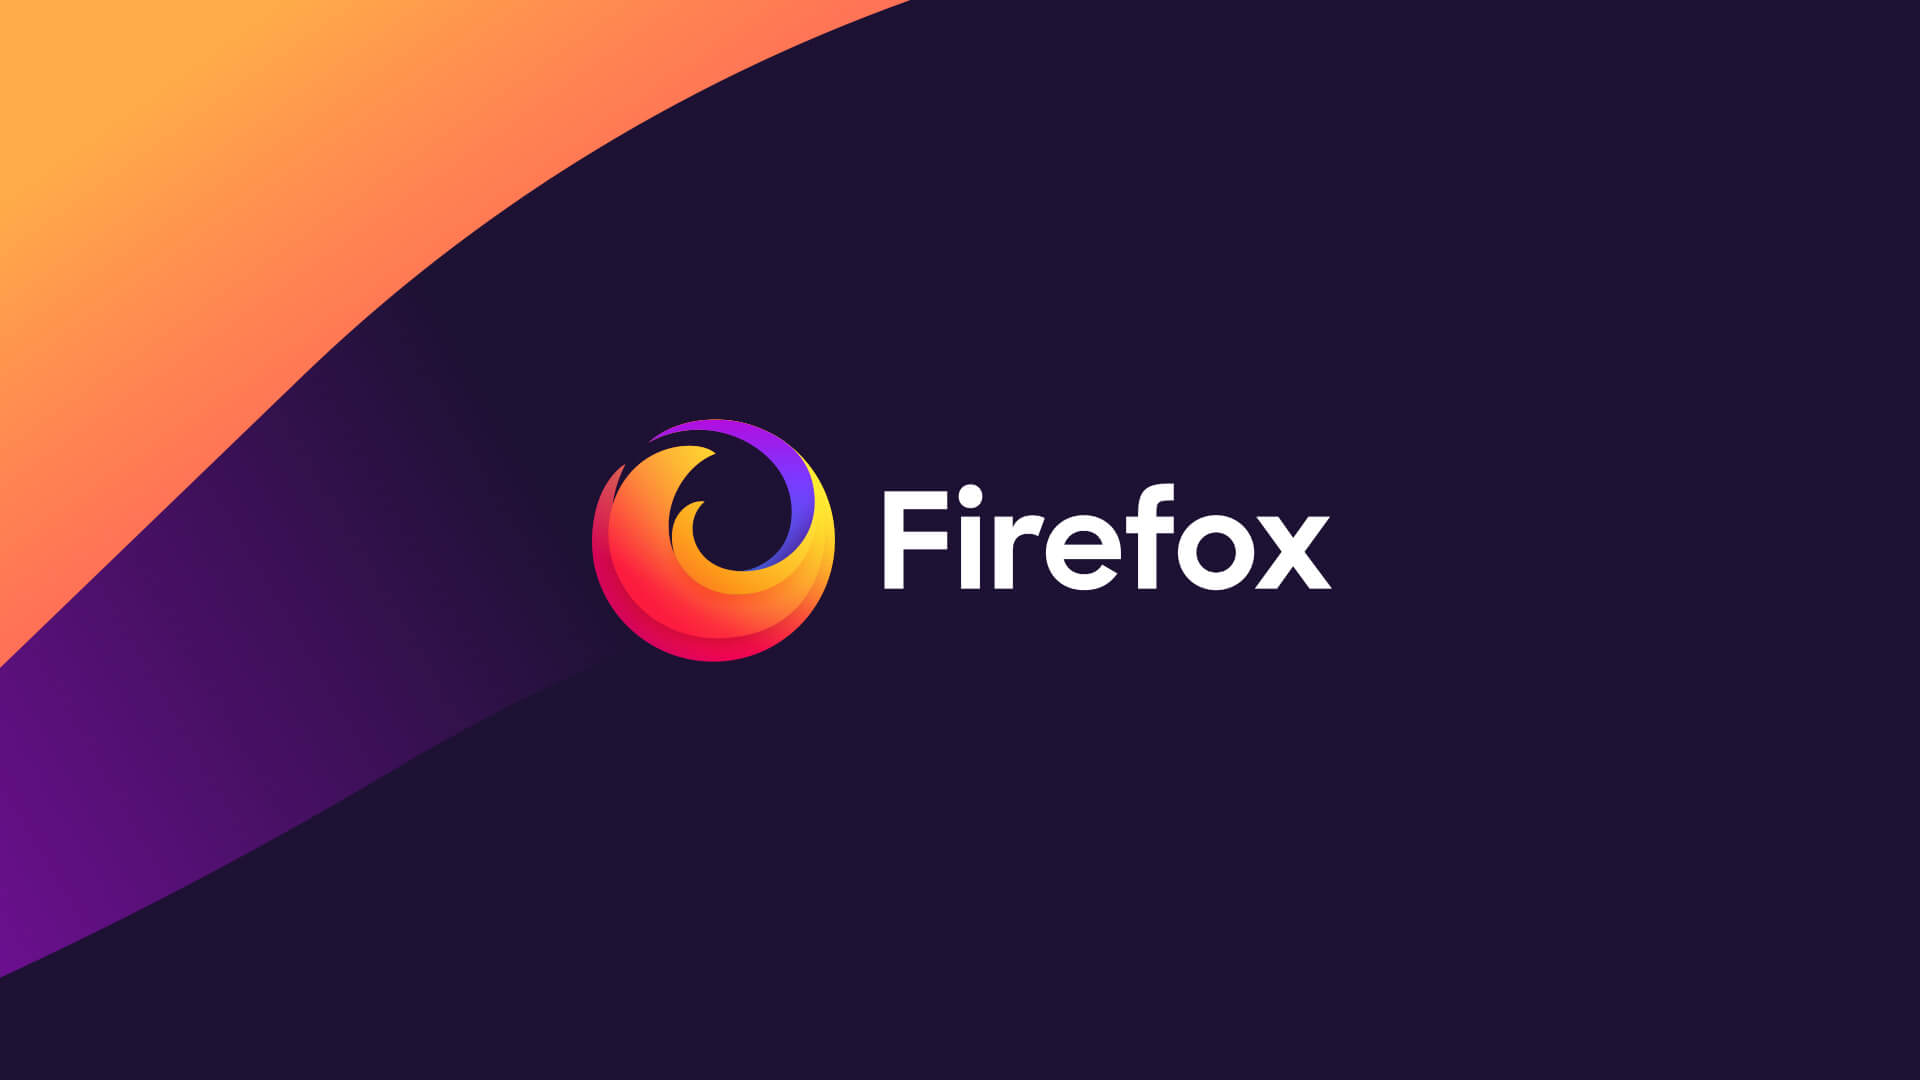 Official Firefox Logo